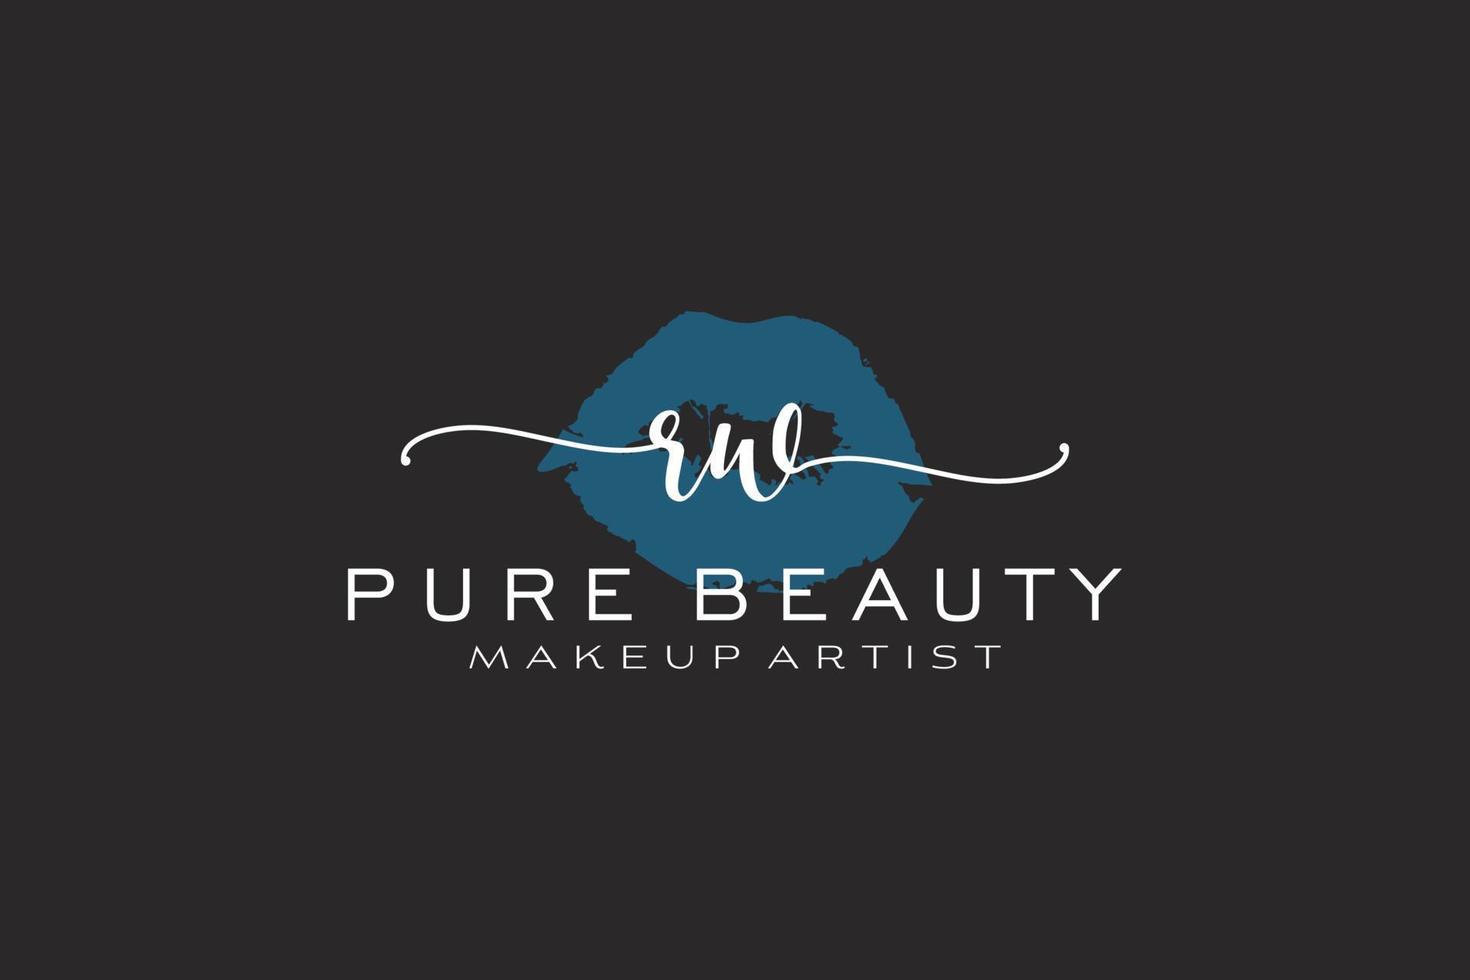 création initiale de logo préfabriqué pour les lèvres aquarelles rw, logo pour la marque d'entreprise de maquilleur, création de logo de boutique de beauté blush, logo de calligraphie avec modèle créatif. vecteur